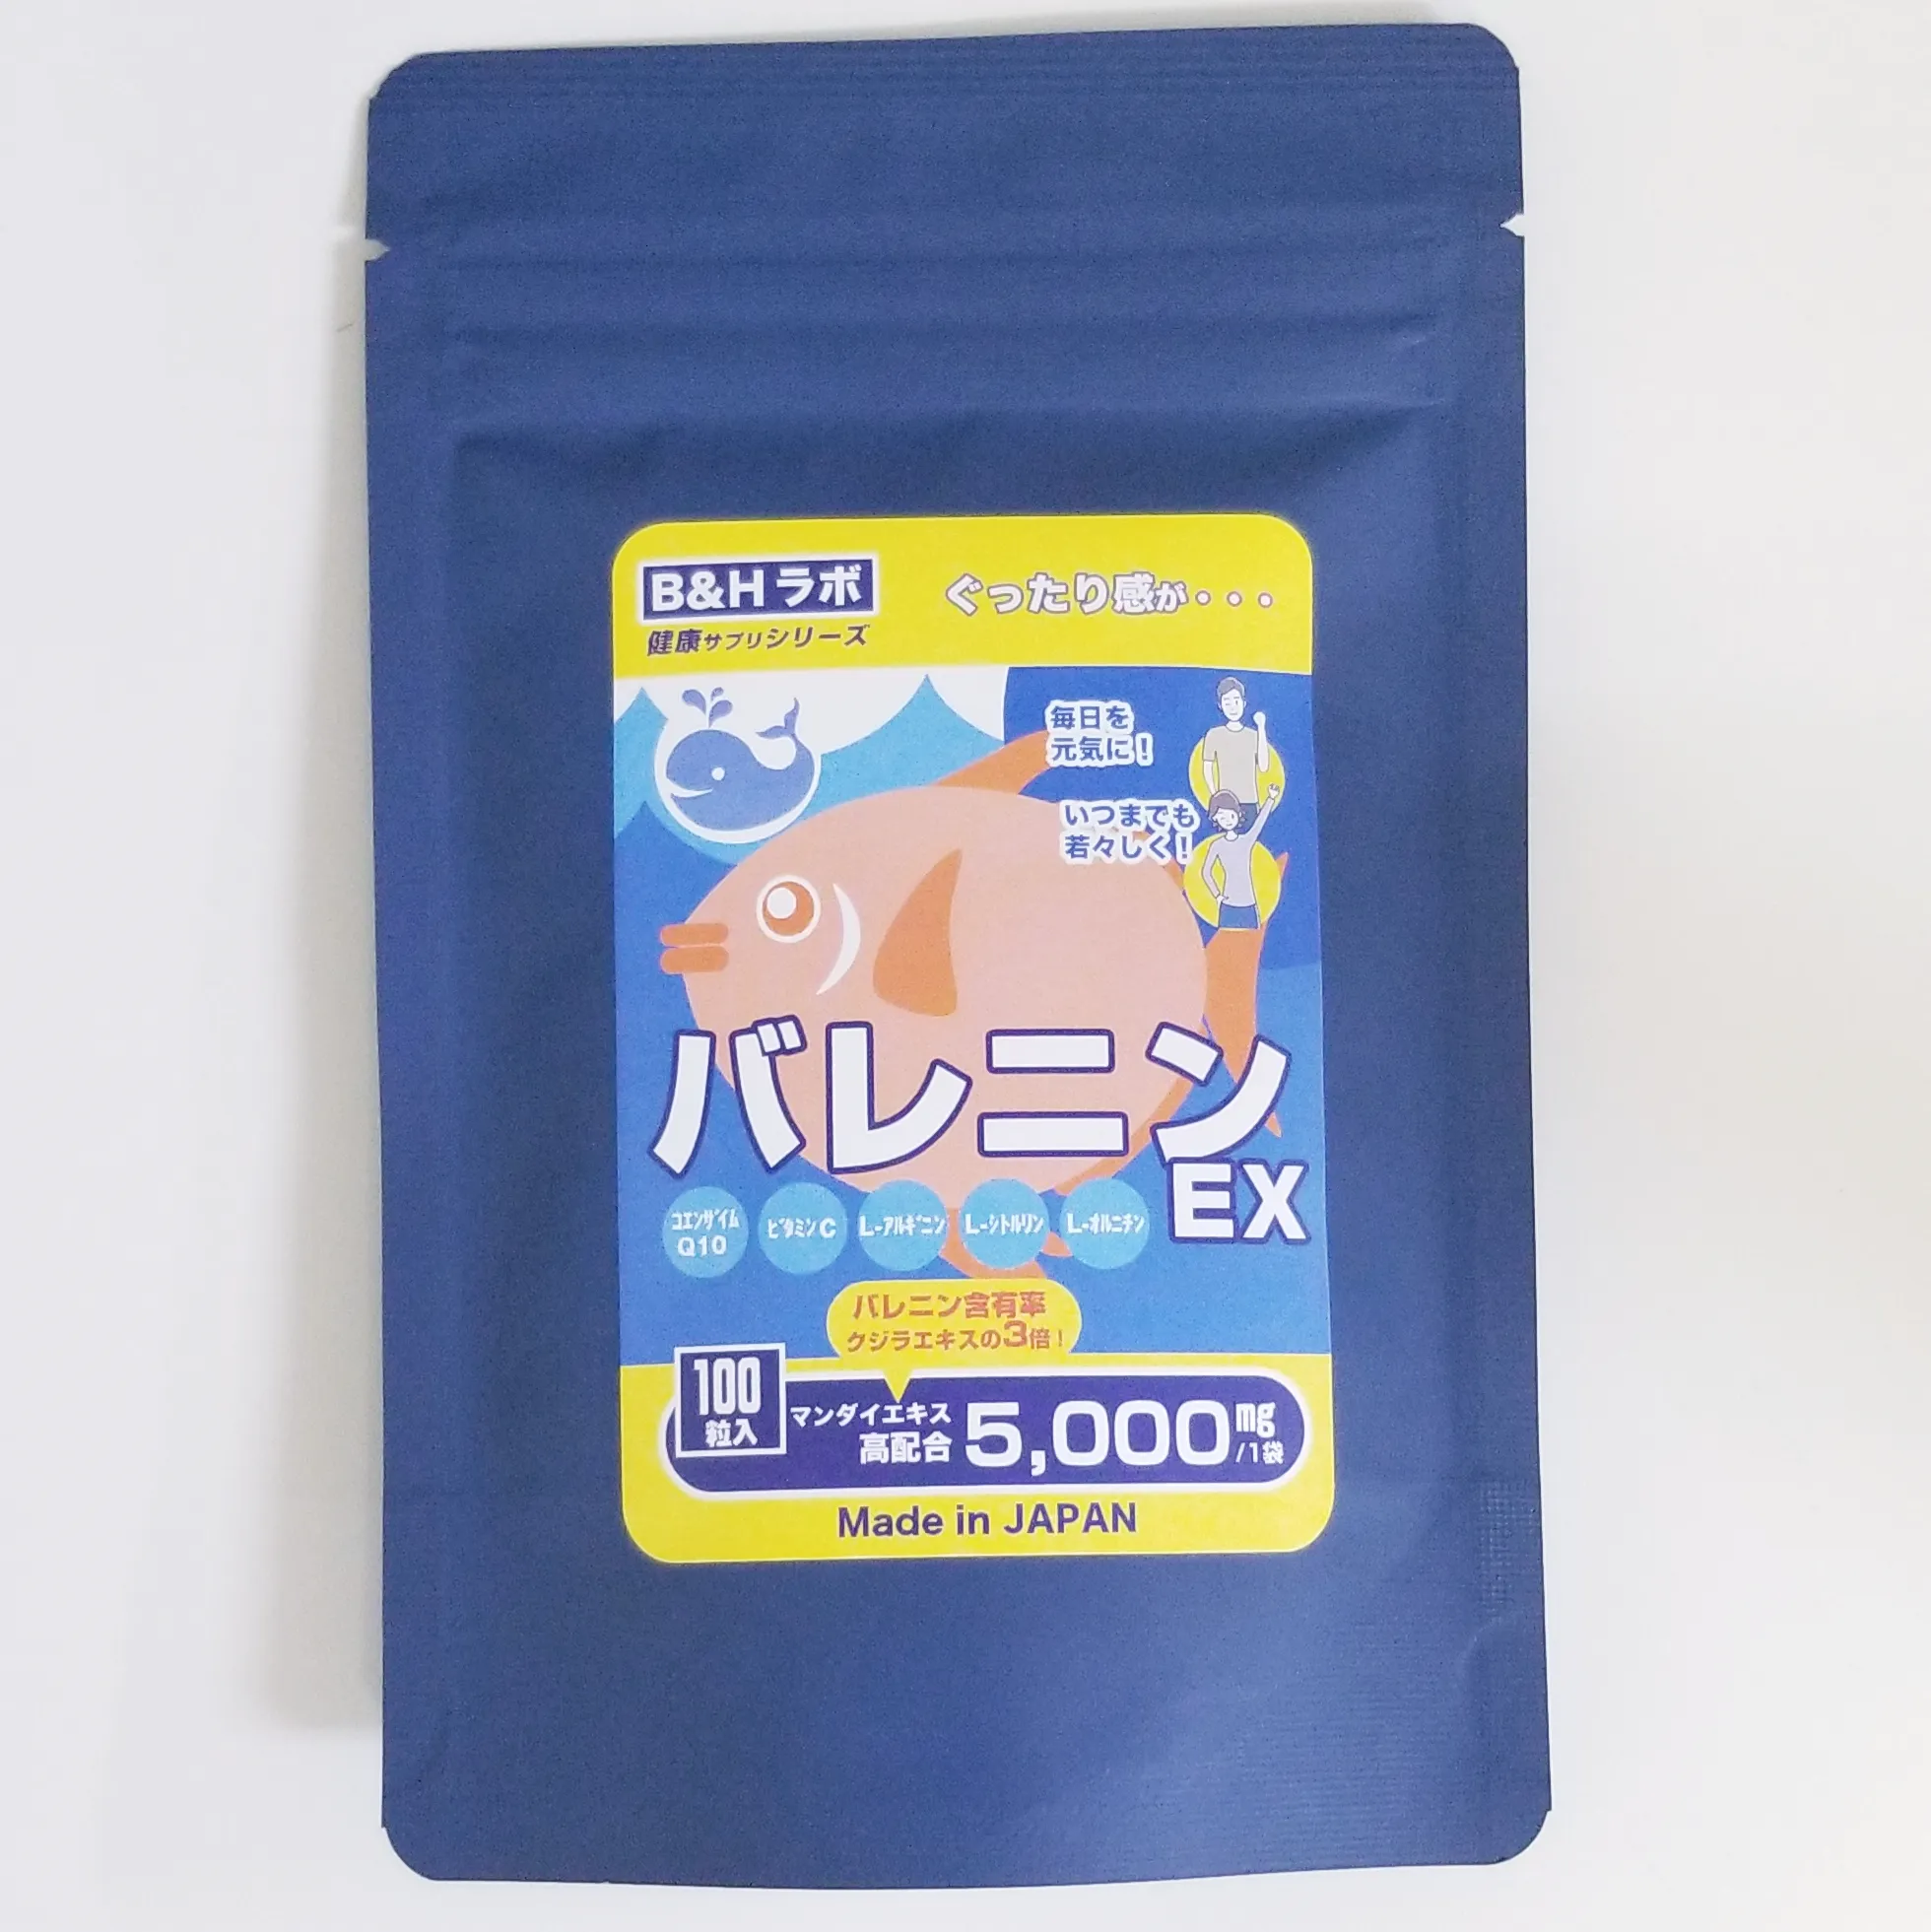 Japanisches Anti-Ermüdung präparat BALENINE EX großvolumige 5000mg Anti-Aging-Tabletten für die Gesundheits energie